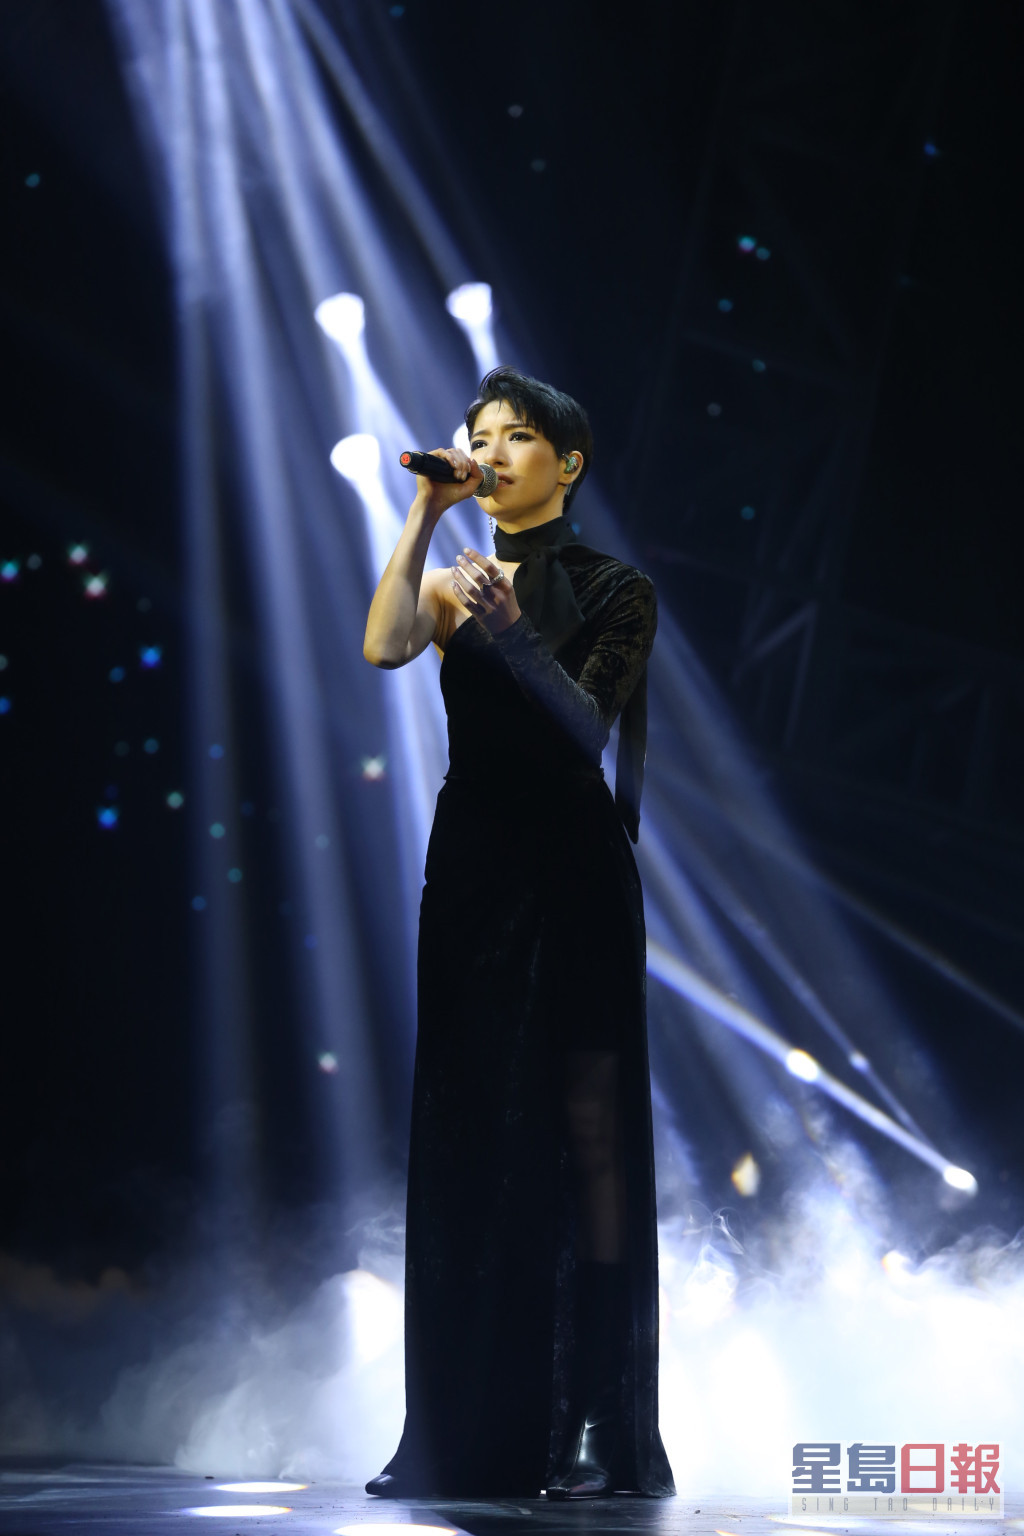 苇璇在《造星III》决赛选唱《愿》，她坦承为冲破自己心理关口。